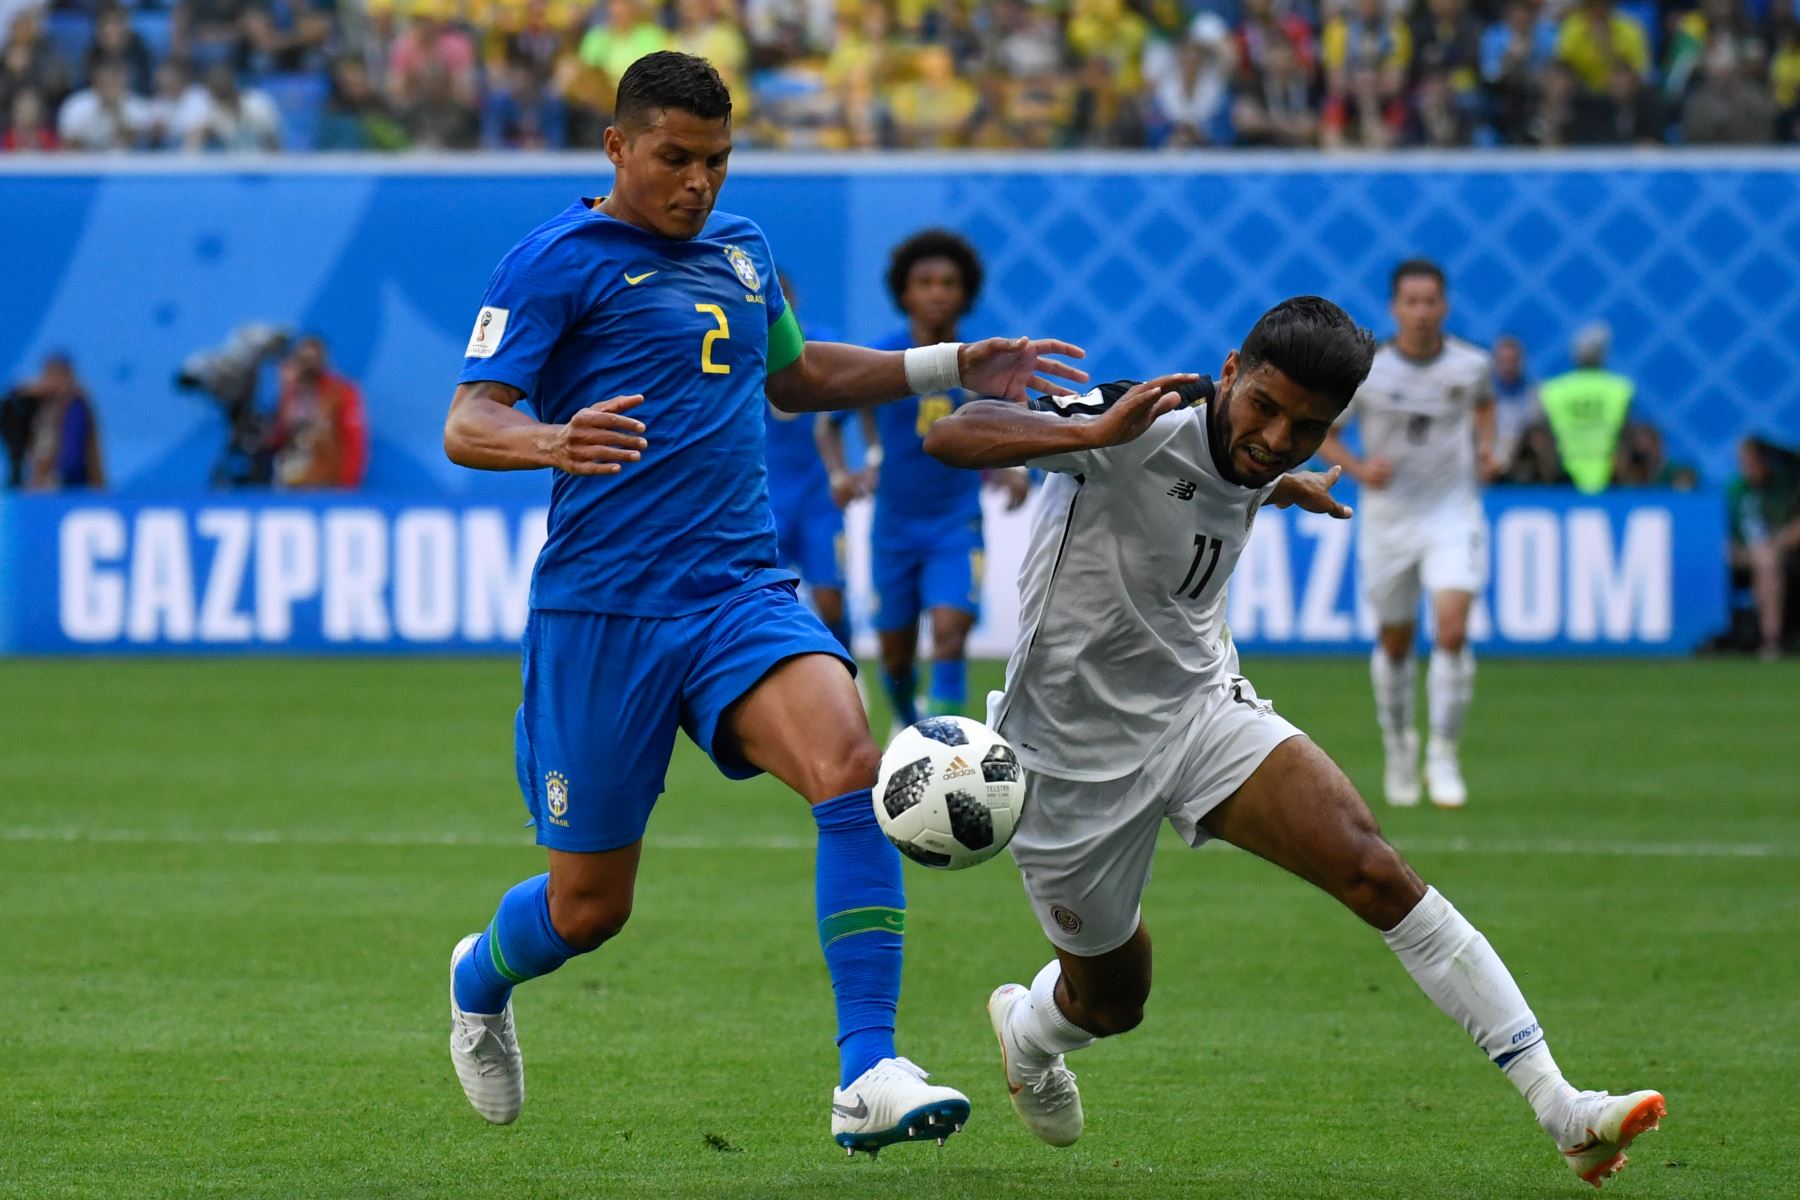 El delantero de Costa Rica Johan Venegas (R) está marcado por el defensor brasileño Thiago Silva durante el partido de fútbol del Grupo E de la Copa Mundial Rusia 2018 entre Brasil y Costa Rica en el estadio San Petersburgo el 22 de junio de 2018. / AFP